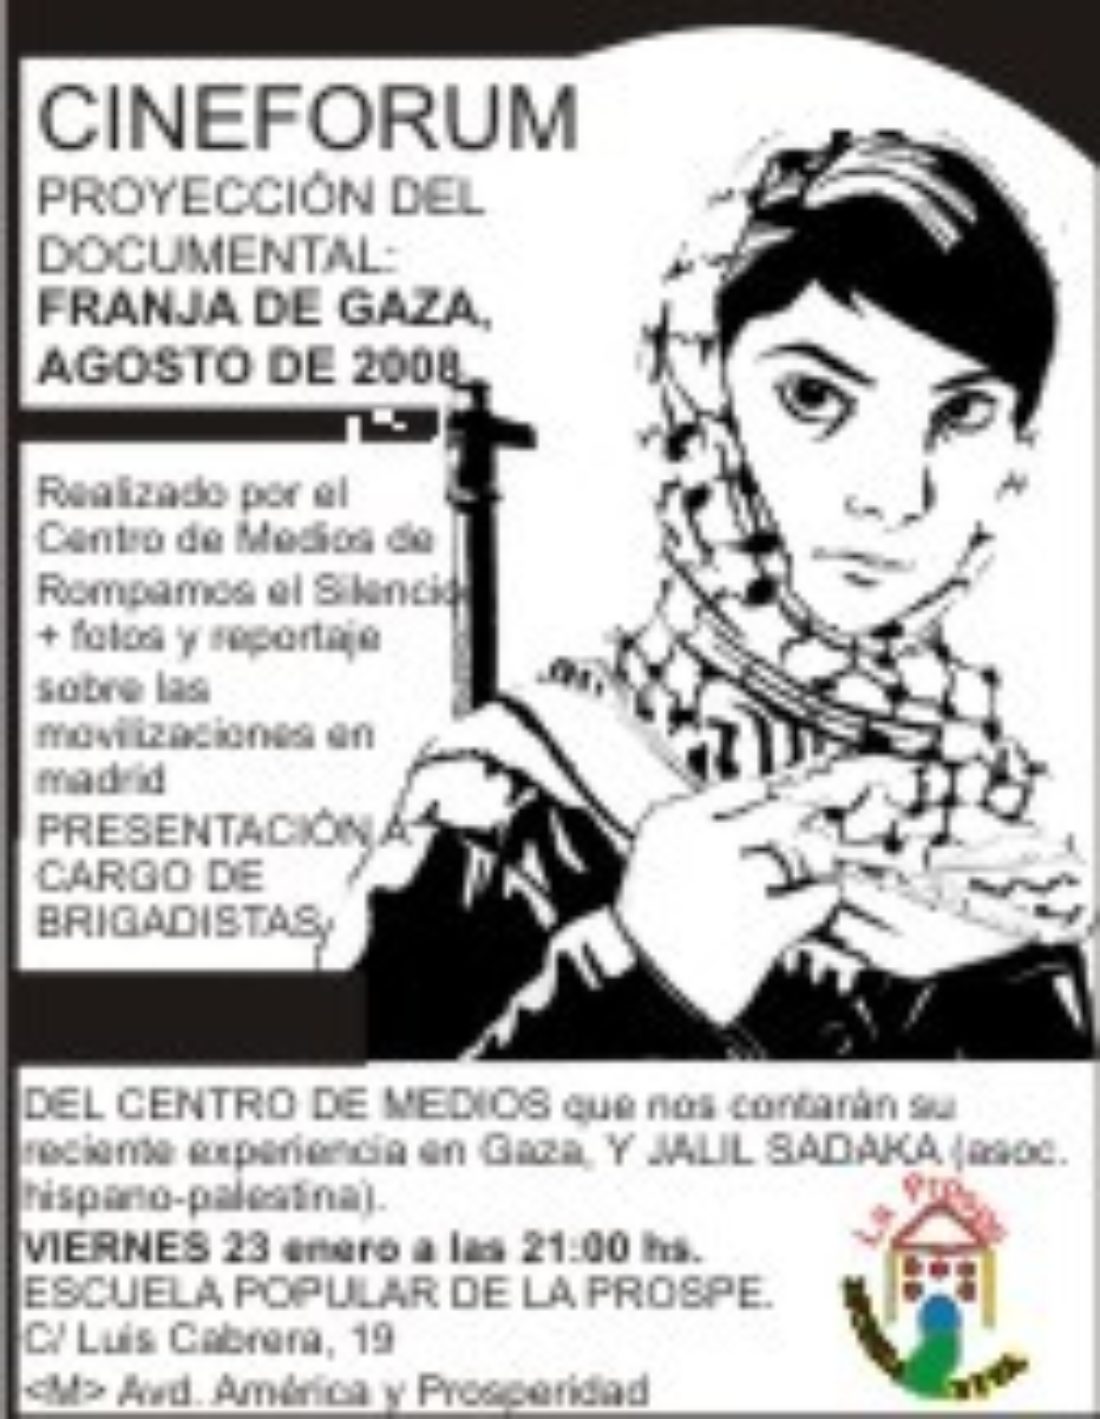 Madrid, La Prospe : cinefórum, con proyección del documental «Franja de Gaza, agosto de 2008». Viernes 23 de enero, a las 21:00